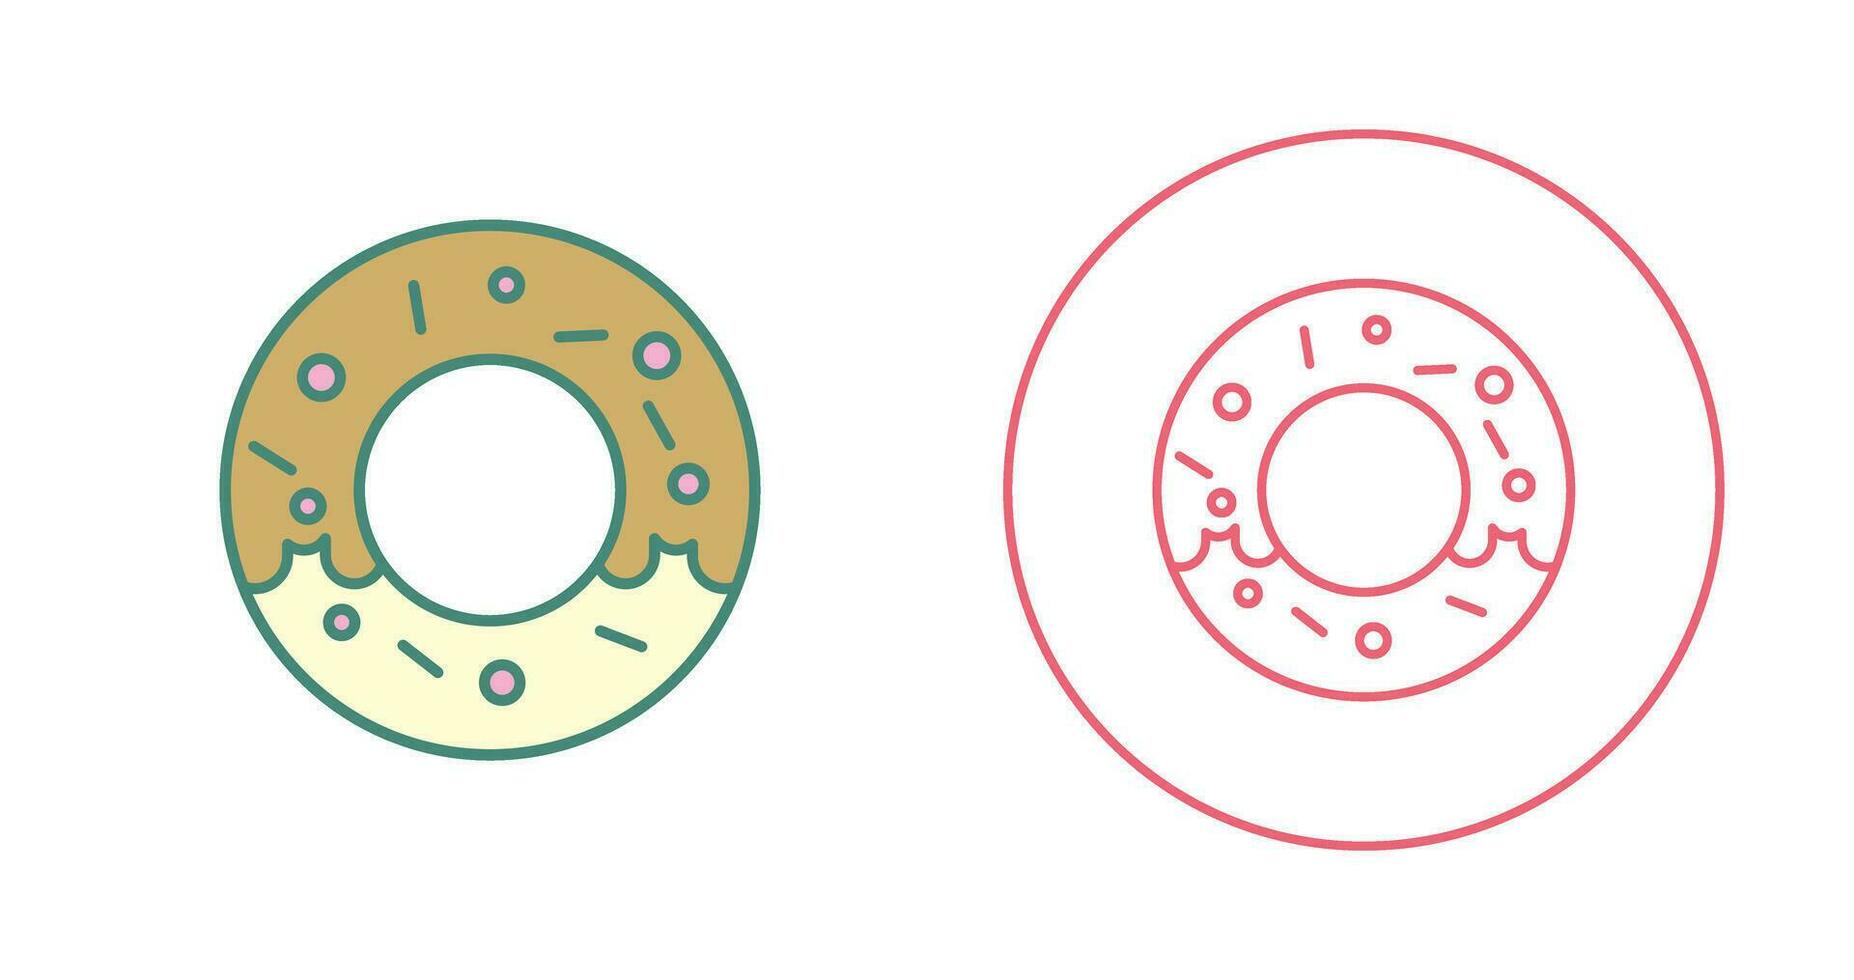 Donut-Vektor-Symbol vektor